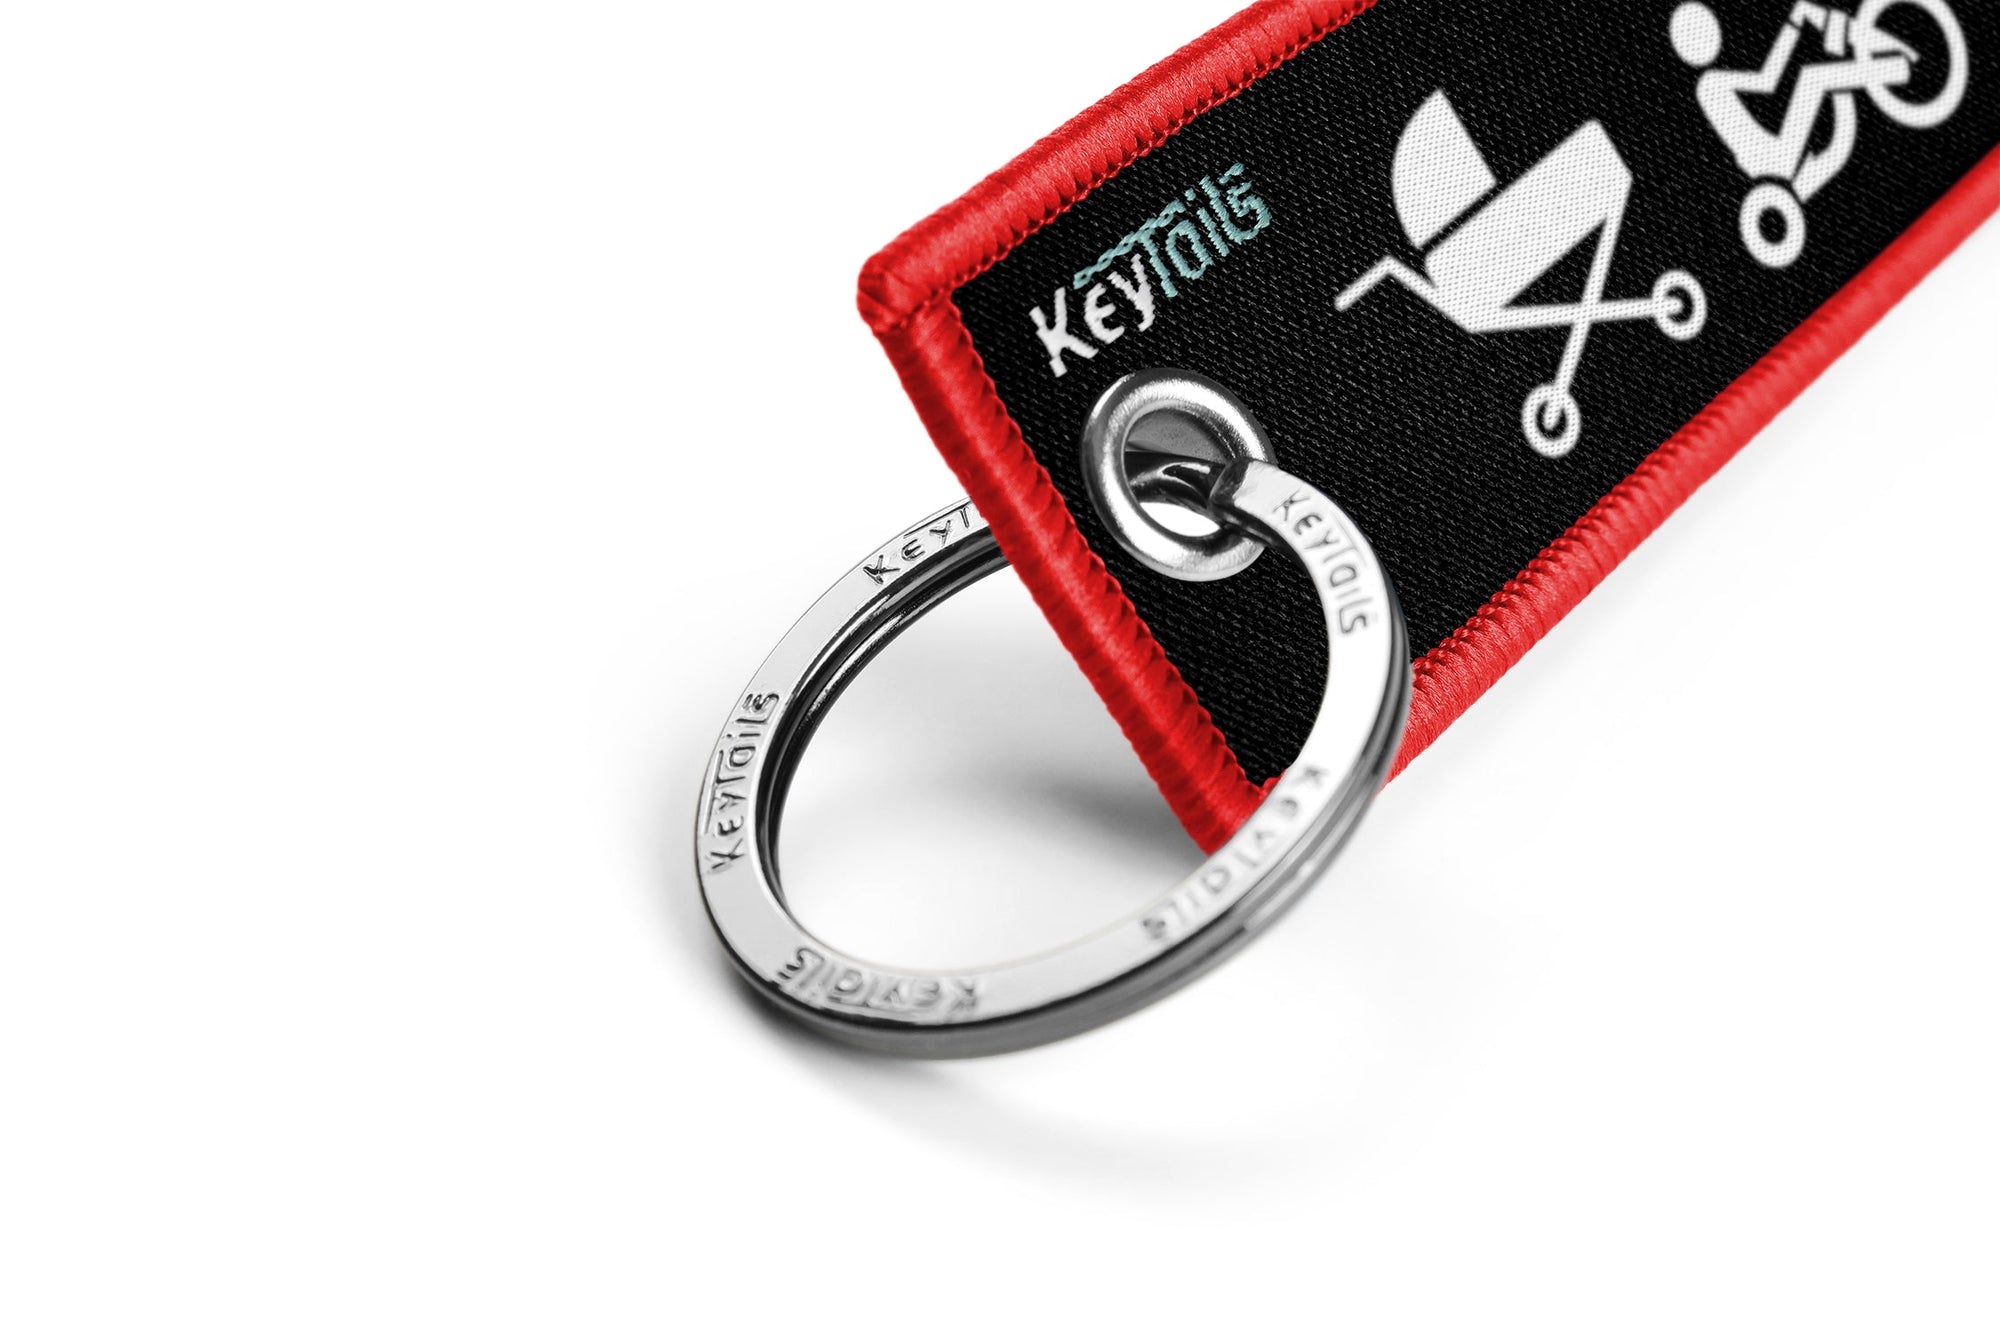 Moto Evolution Keychain, Key Tag - Red